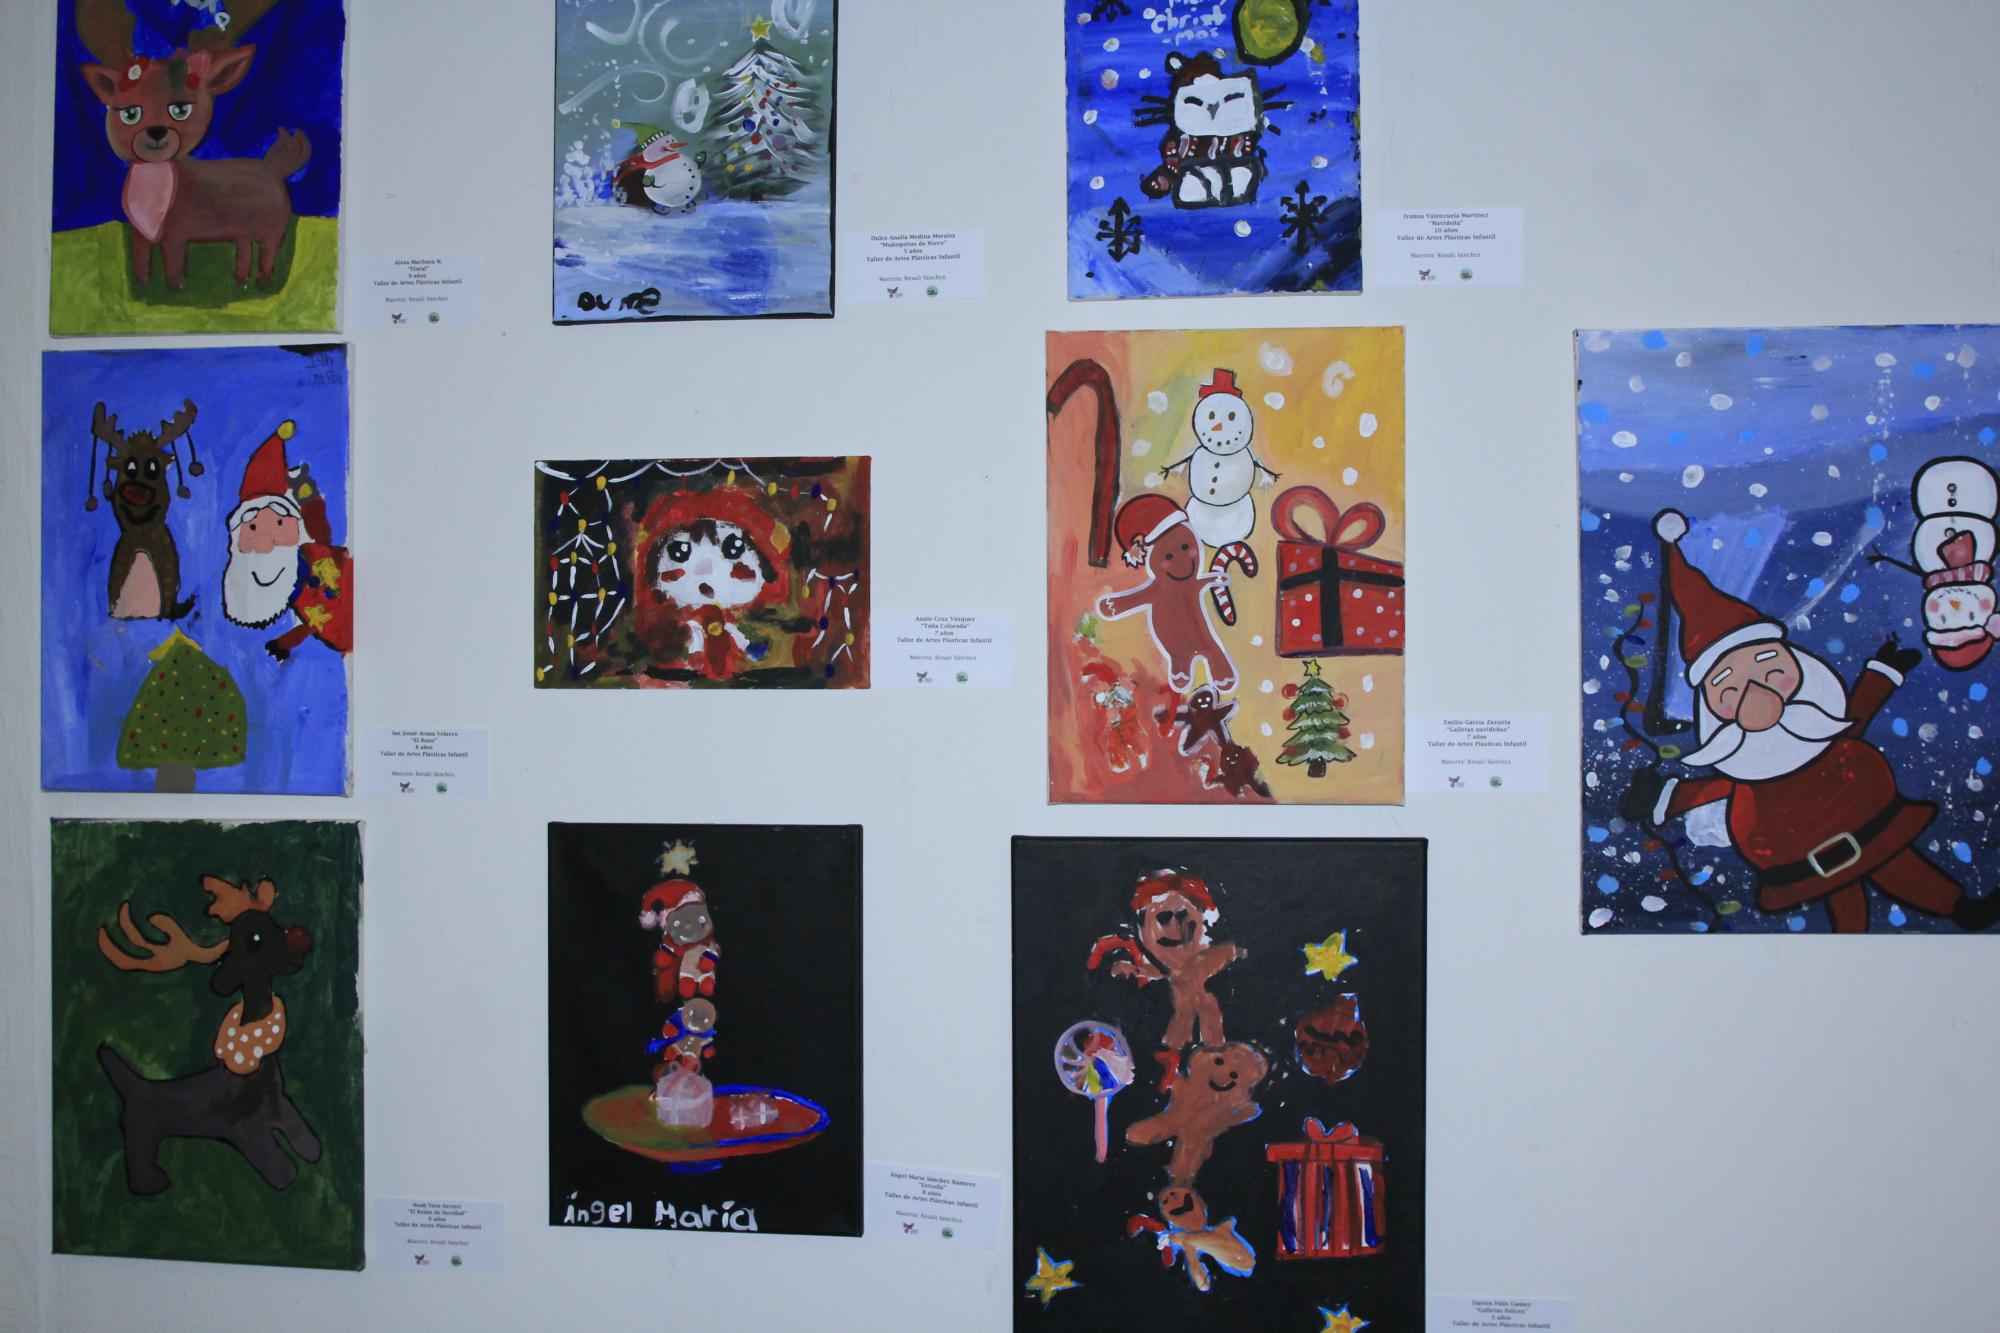 $!Diversos motivos navideños plasmaron los pequeños artistas en sus obras.